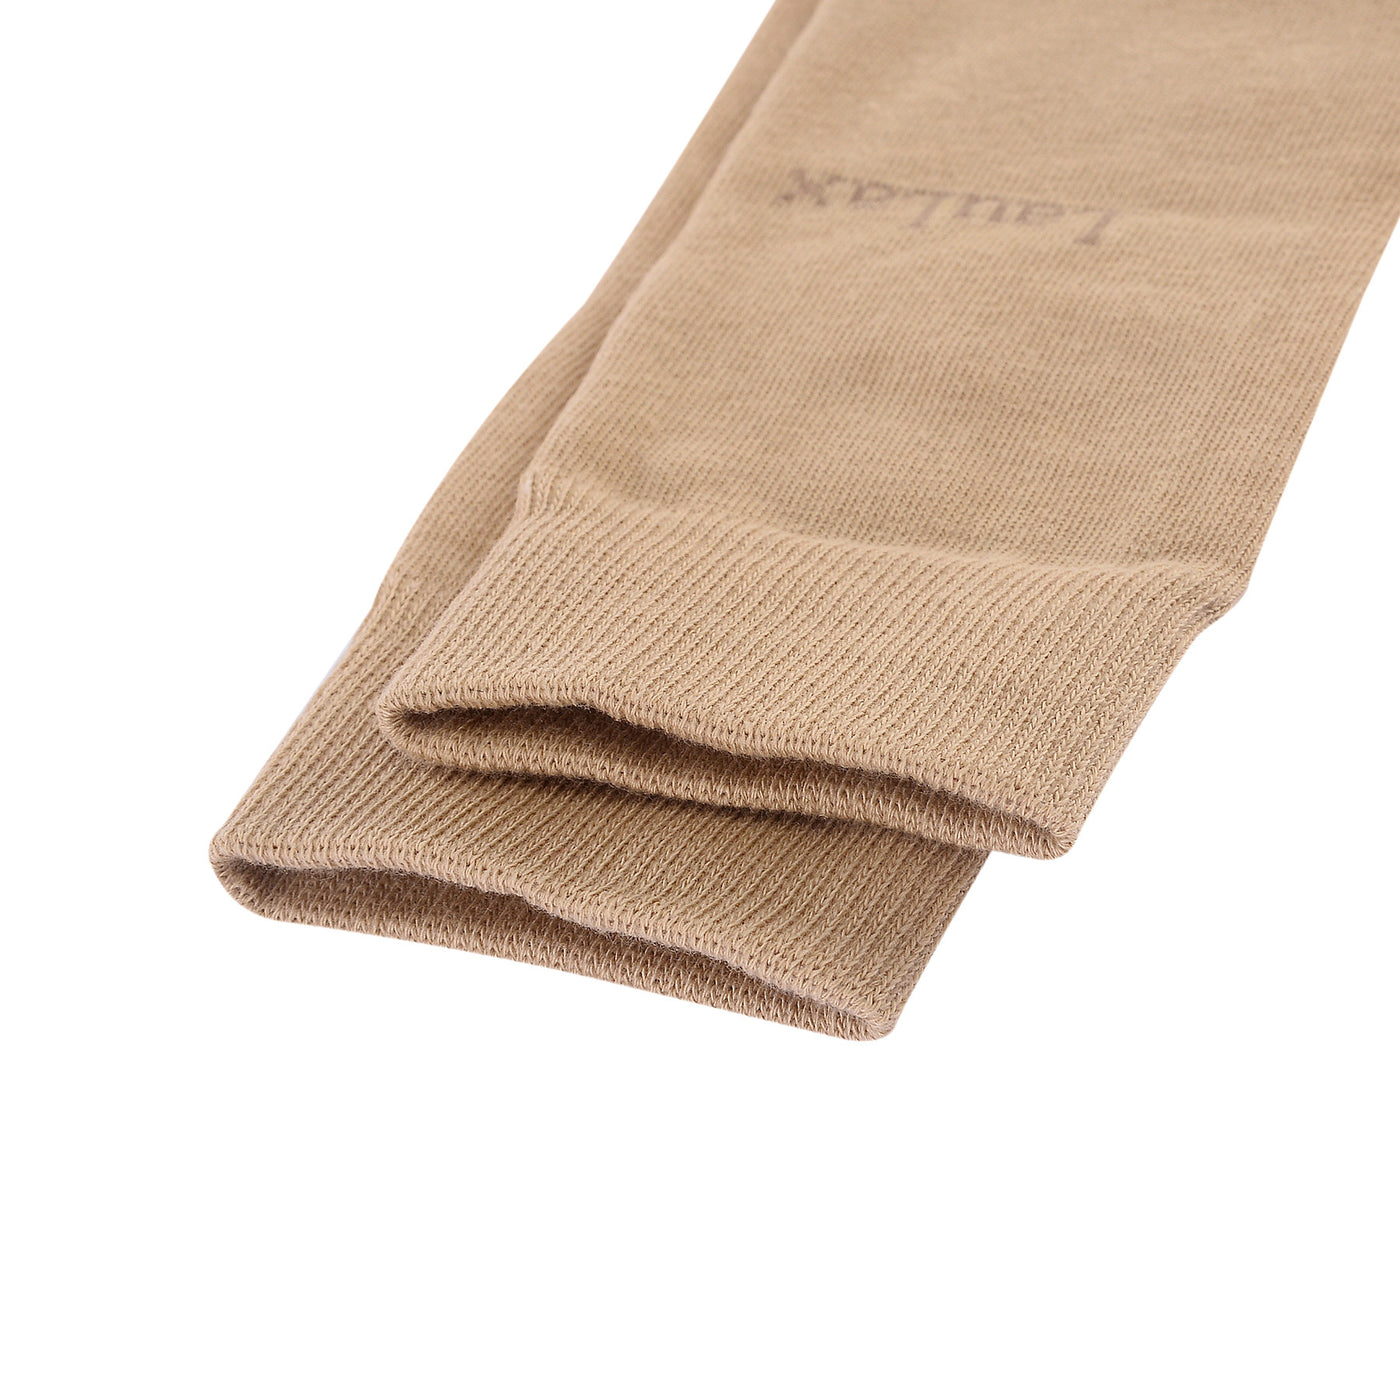 Calcetines formales de algodón peinado de alta calidad en color beige